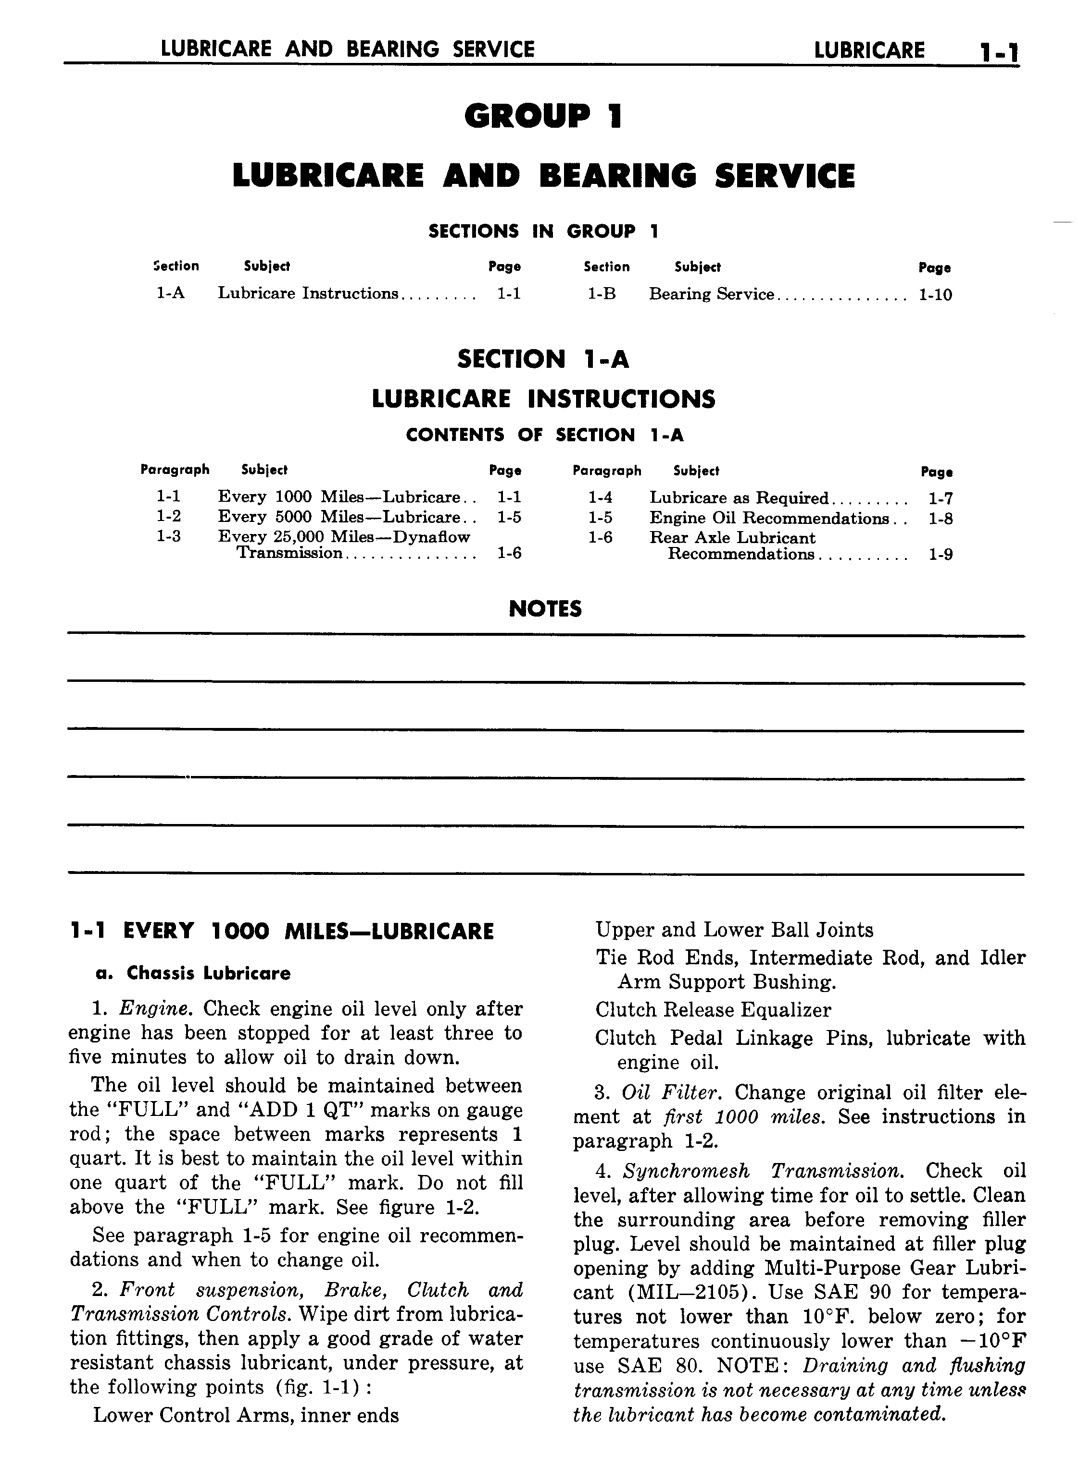 n_02 1957 Buick Shop Manual - Lubricare-001-001.jpg